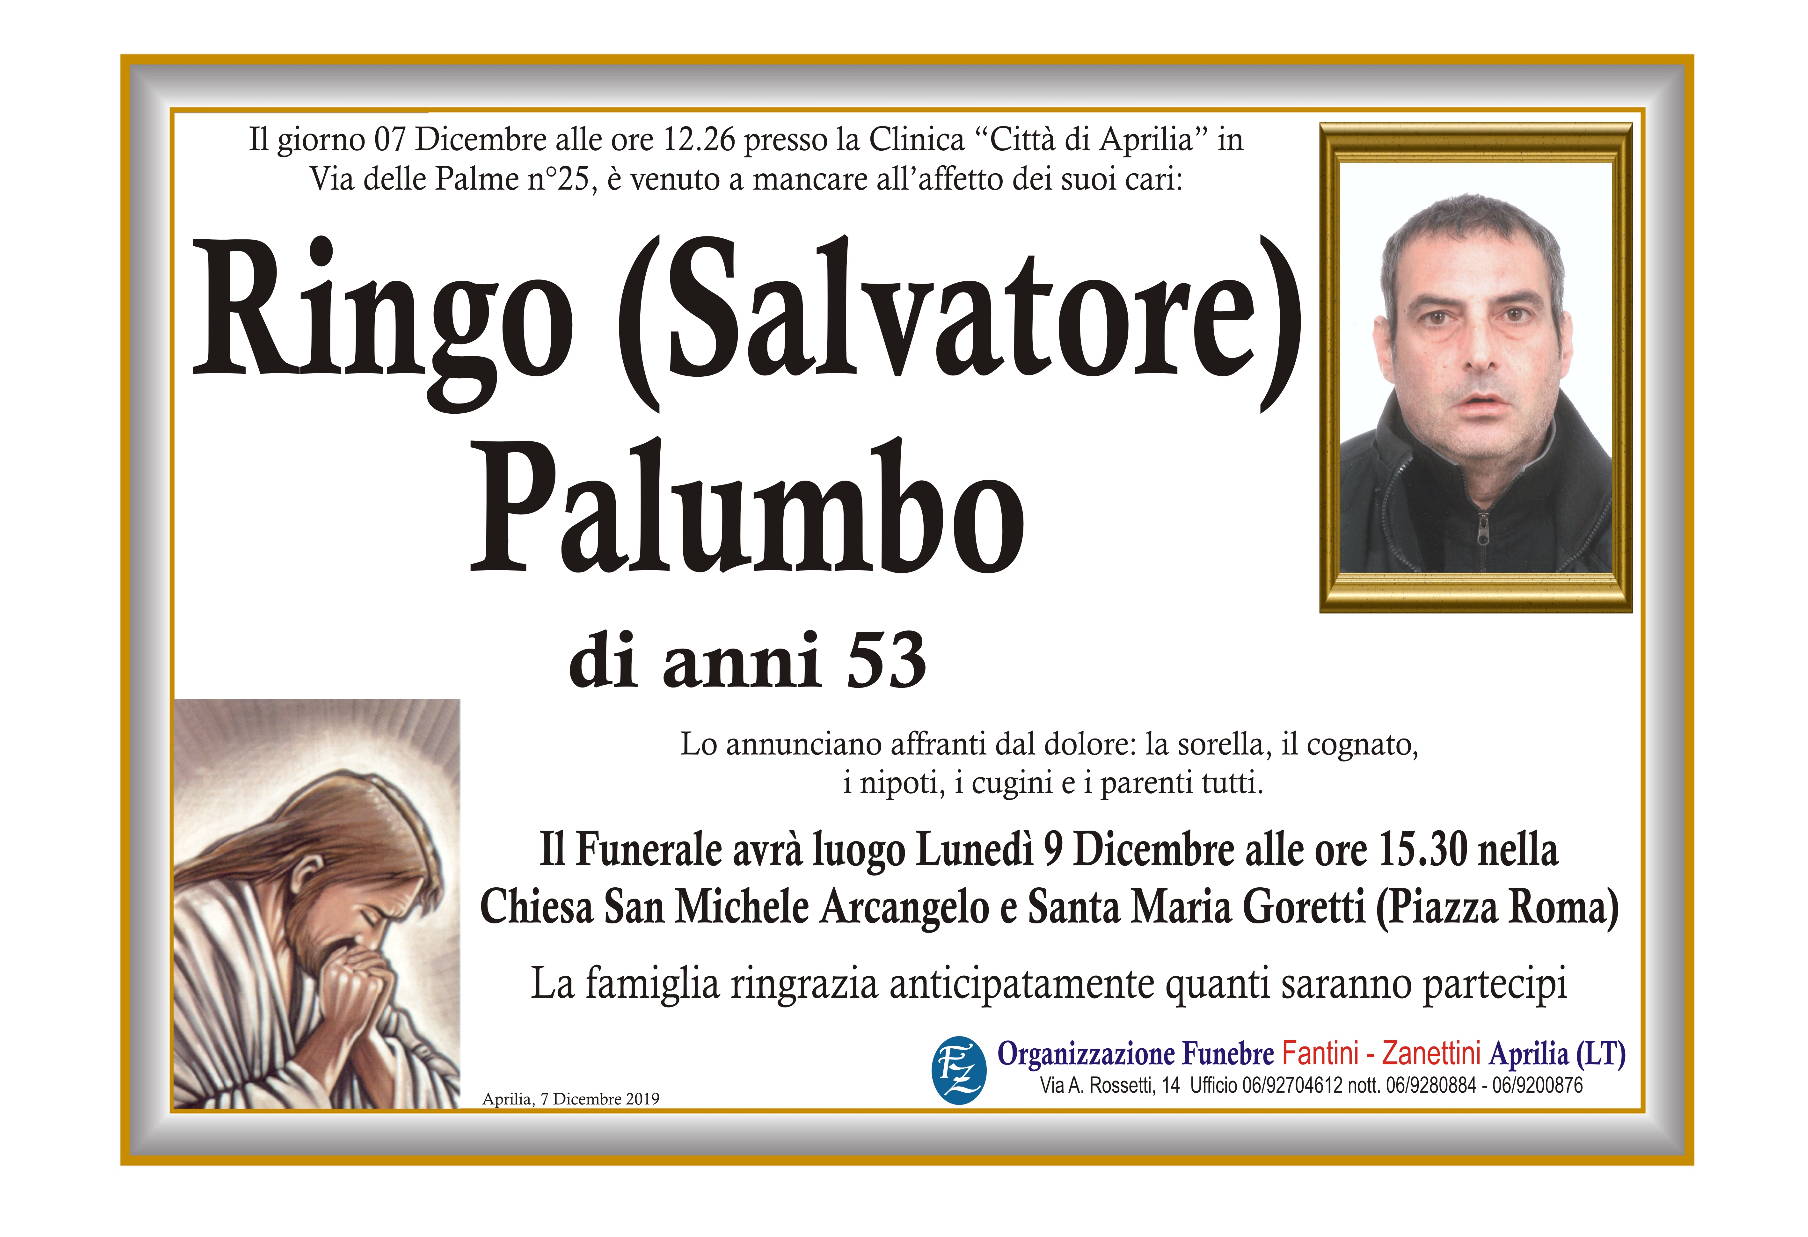 Salvatore Palumbo